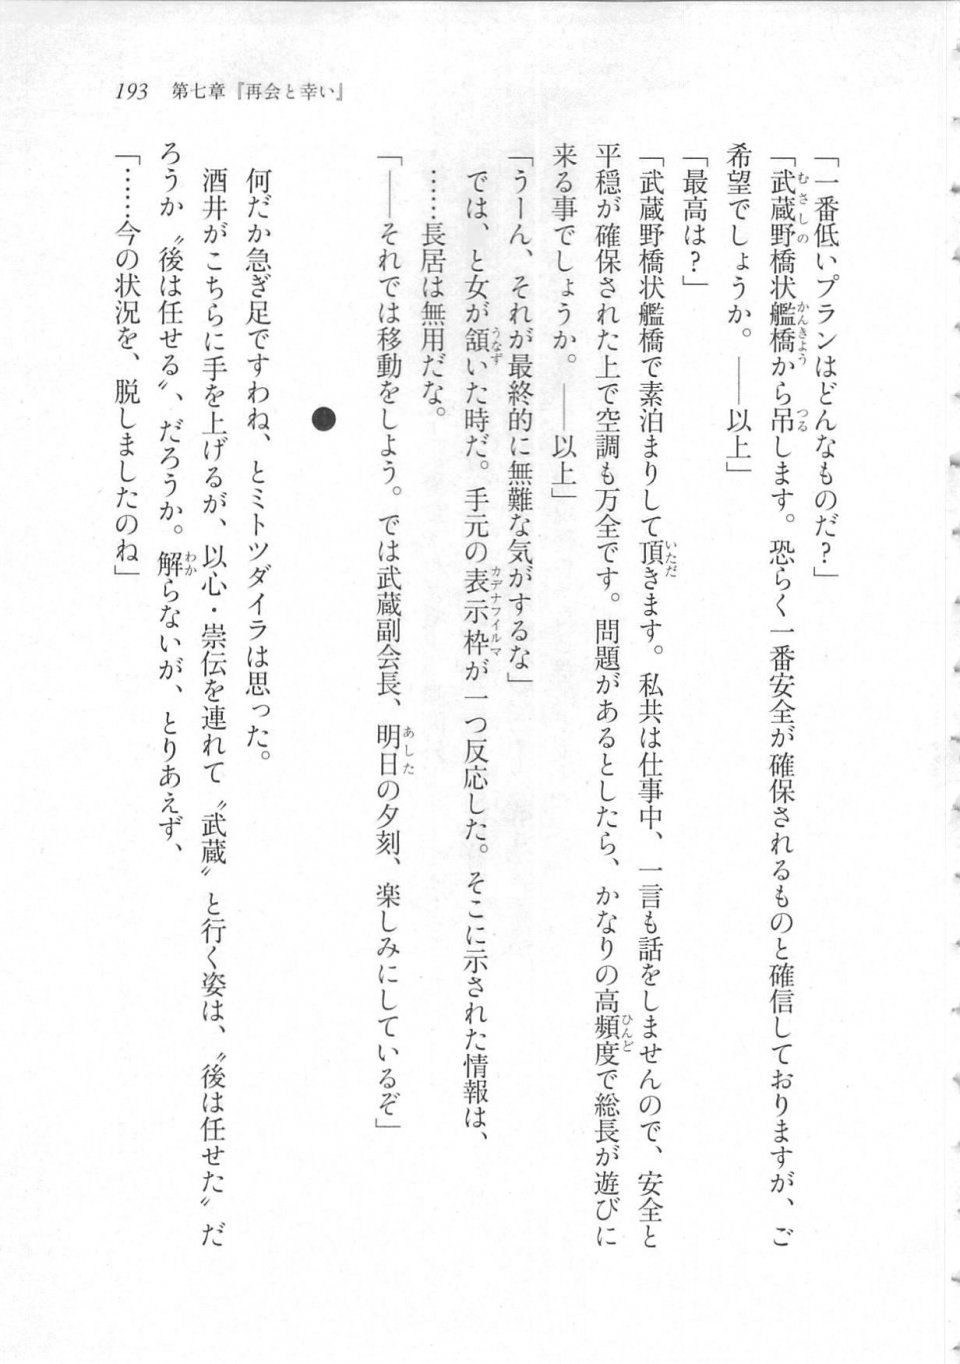 Kyoukai Senjou no Horizon LN Sidestory Vol 3 - Photo #197